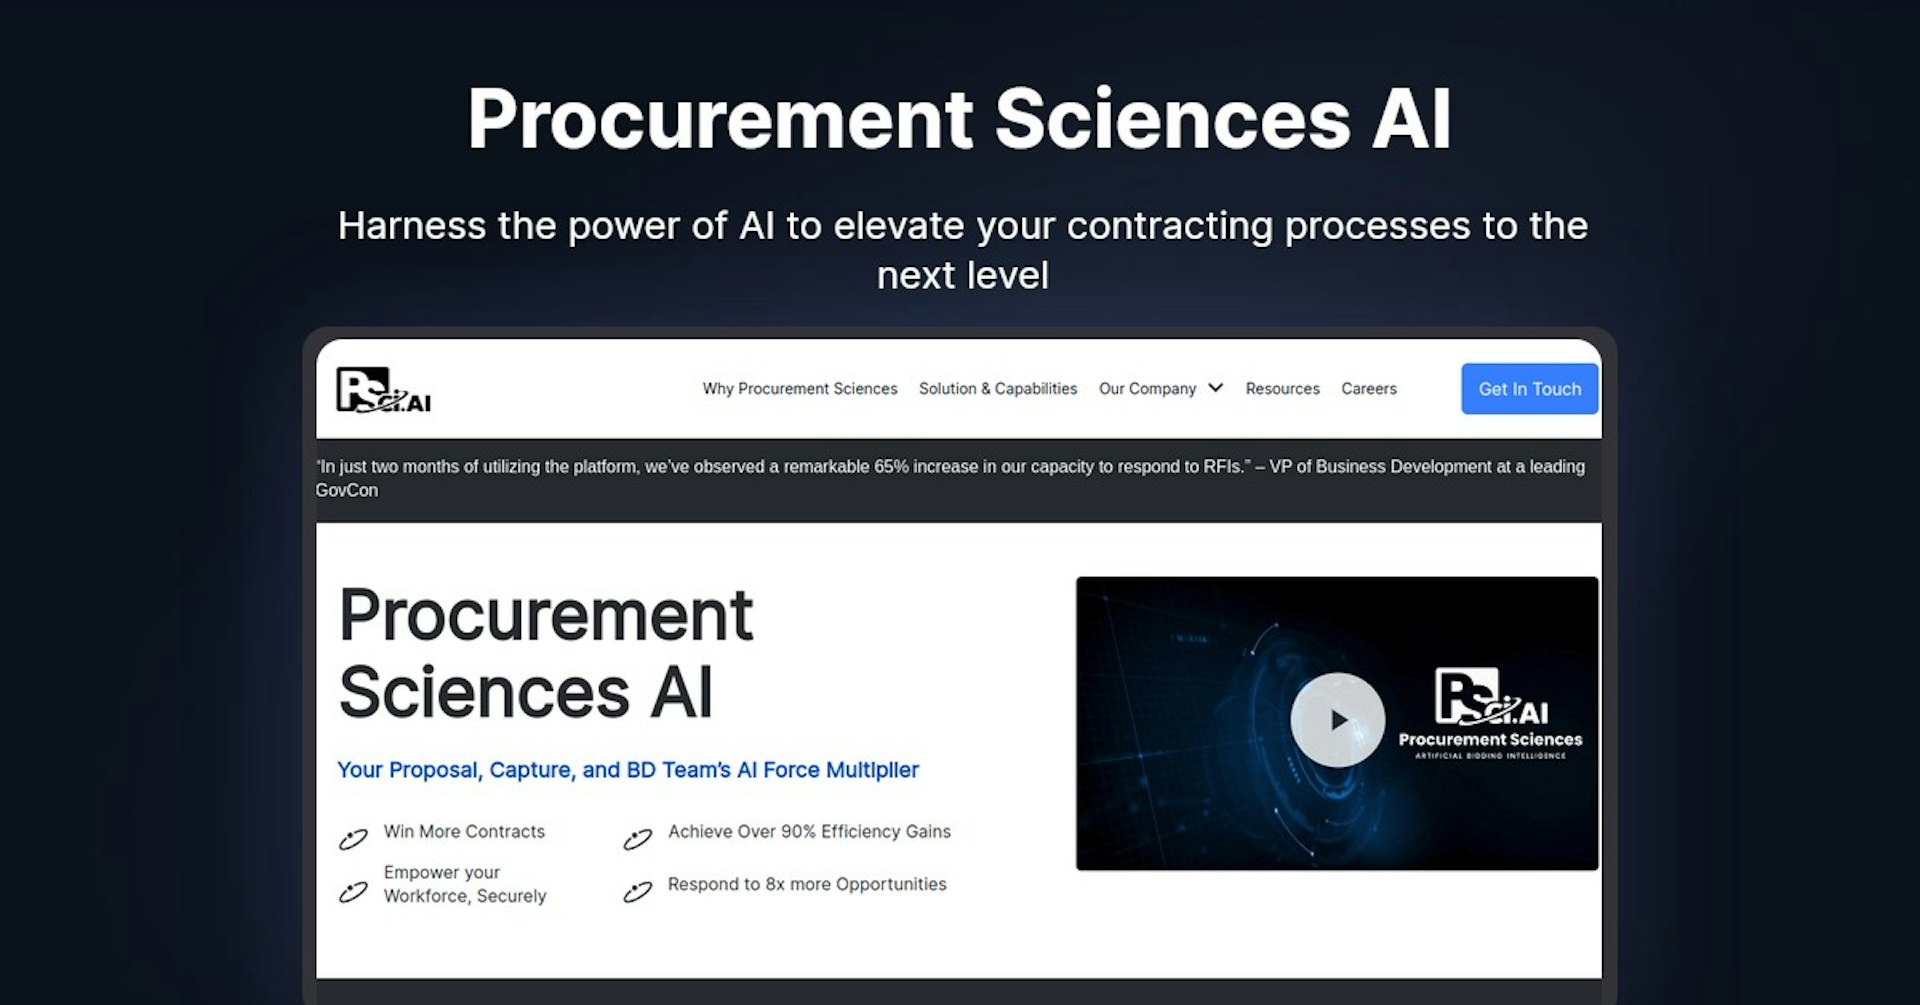 Procurement Sciences AI